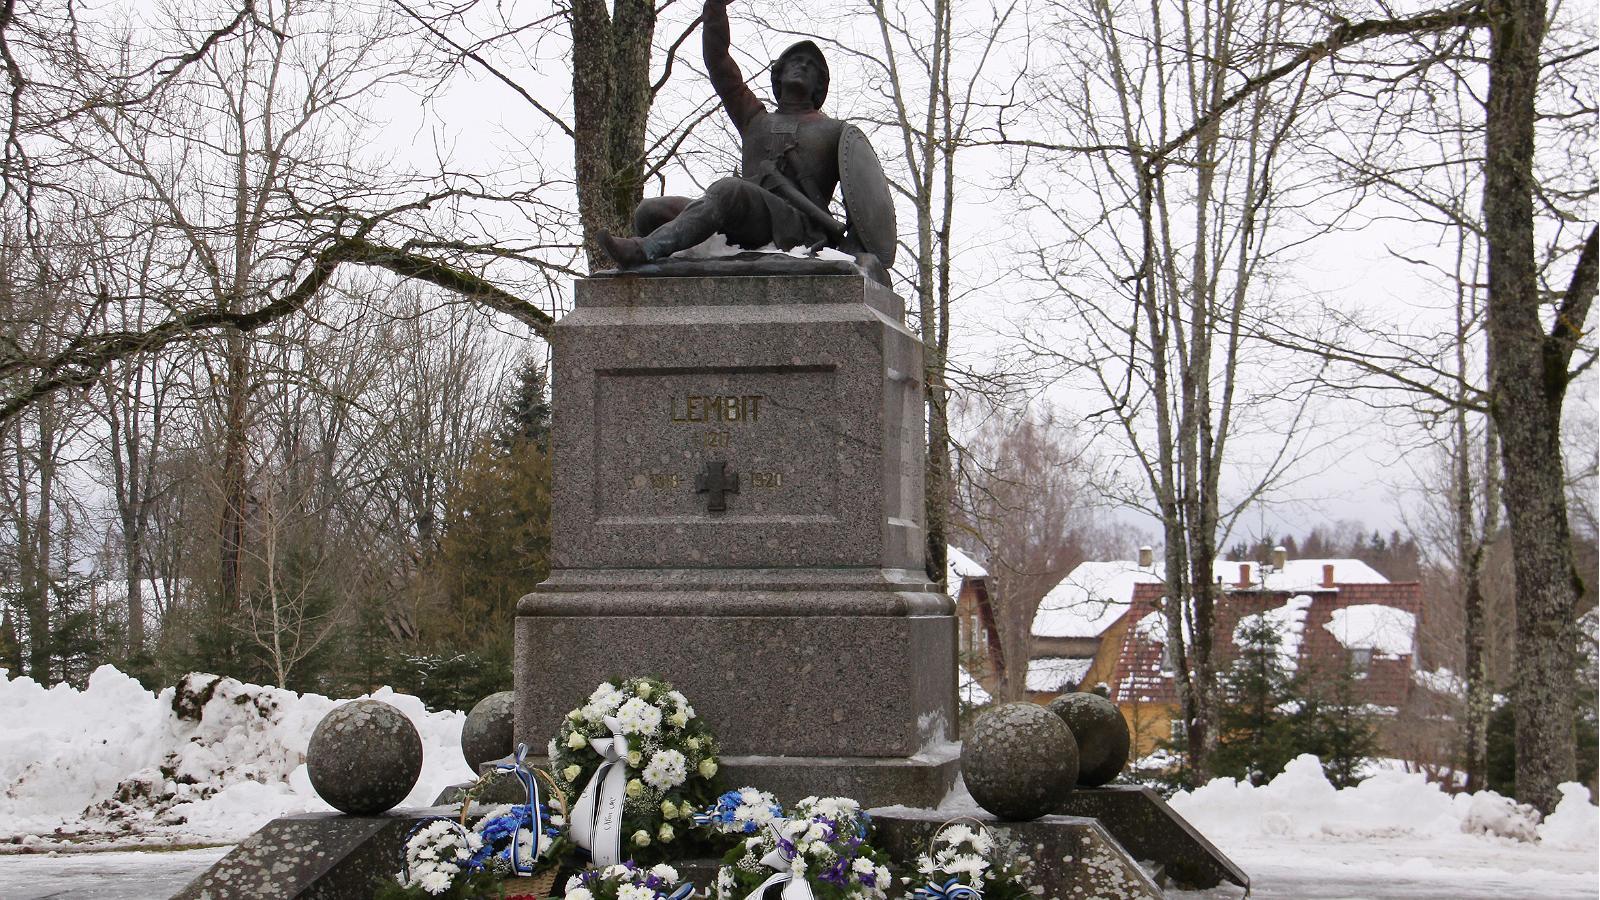 Lembitu-Denkmal für die Gefallenen des Unabhängigkeitskrieges in Suure-Jaani (Leili Kuusk).